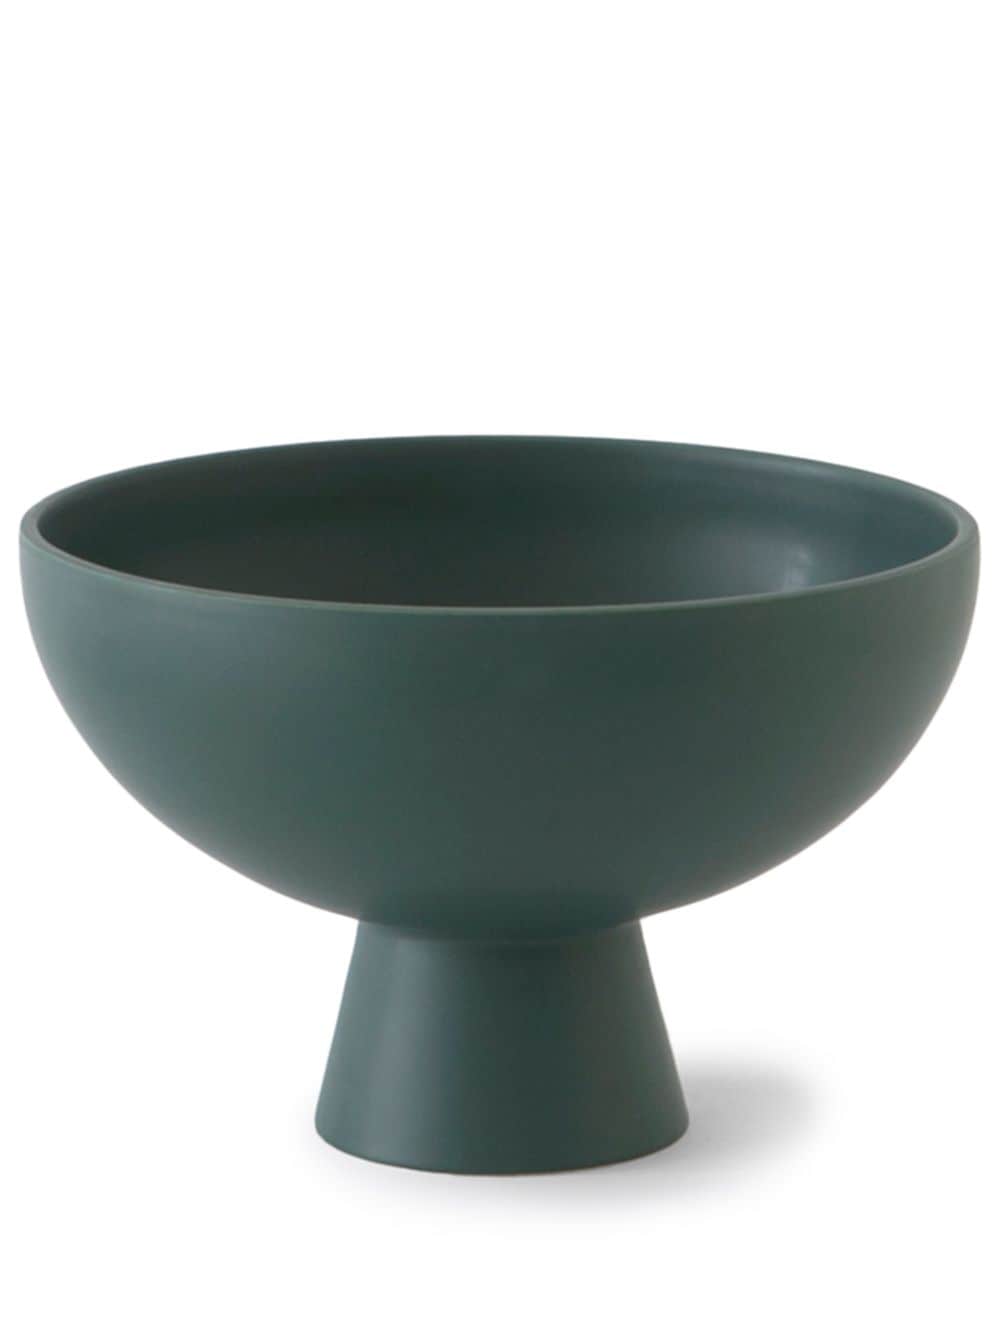 raawii Strøm bowl (10cm) - Green von raawii